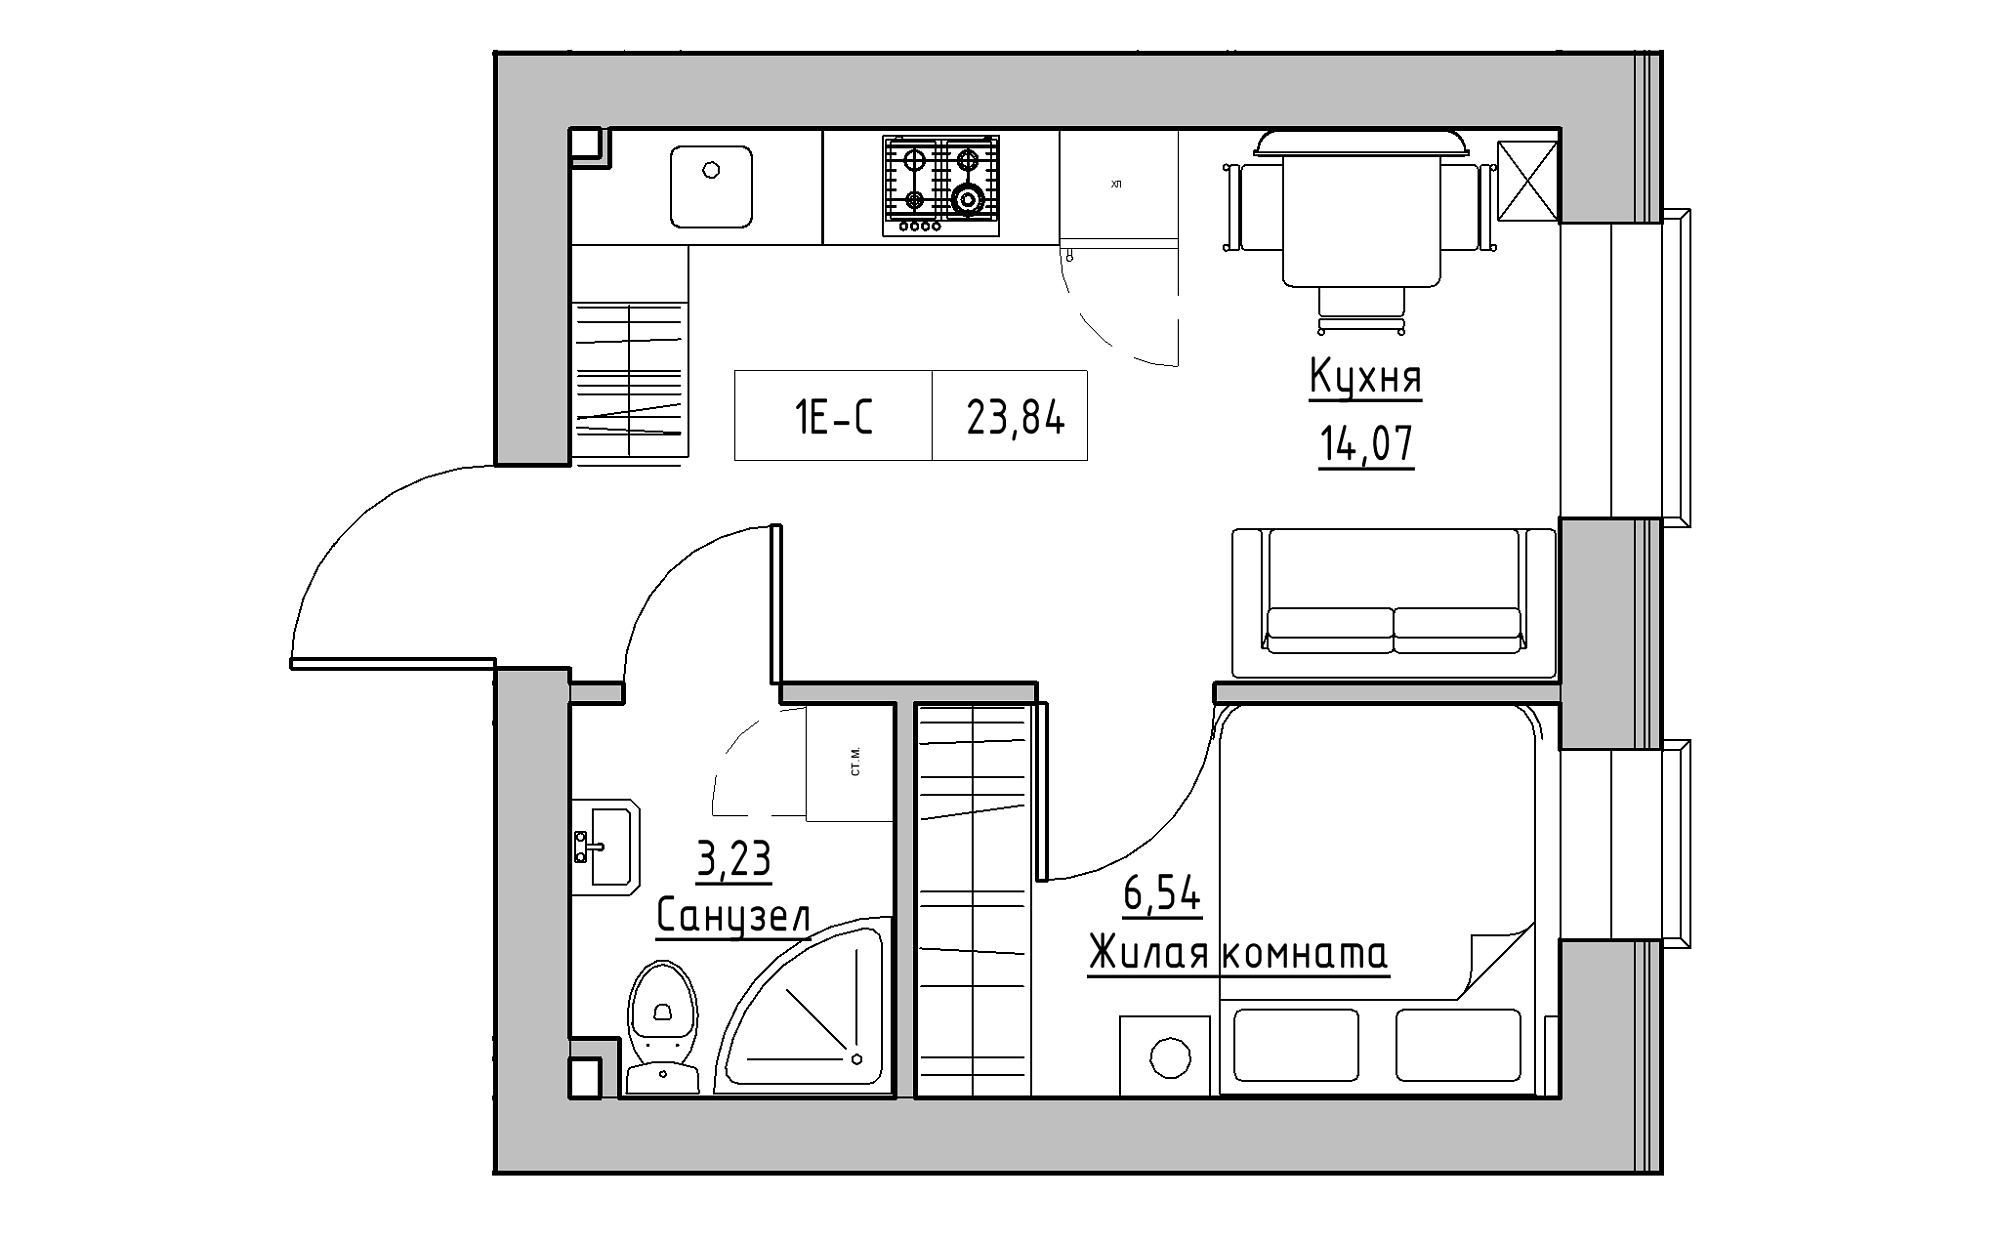 Планировка 1-к квартира площей 23.84м2, KS-022-05/0014.